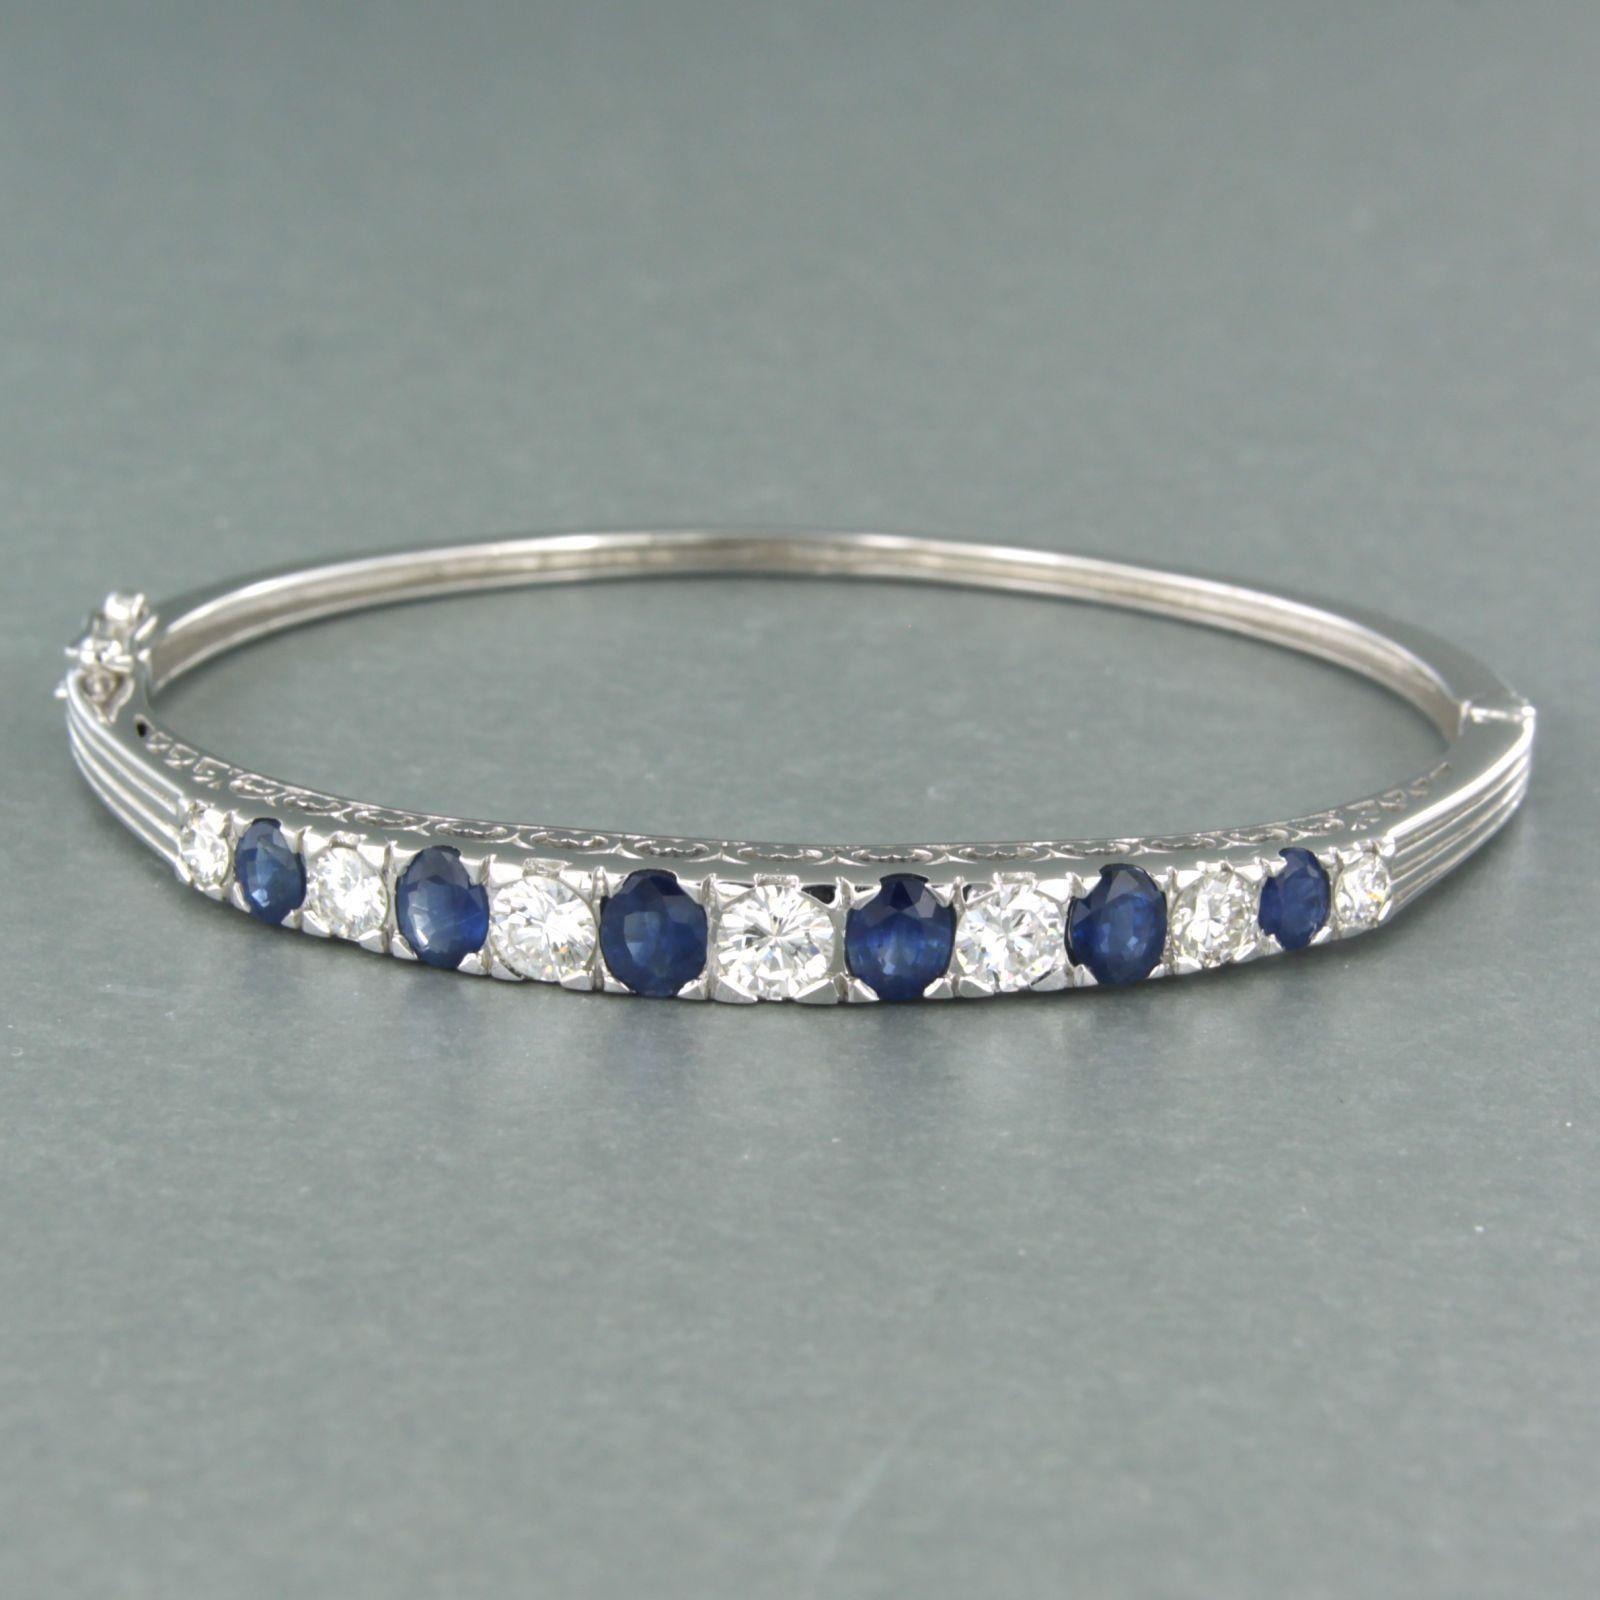 Bracelet en or blanc 14k serti d'un saphir et d'un diamant taille brillant - 6,2 cm x 5,5 cm

description détaillée :

la largeur de la bande du bracelet est de 3,7 mm et le haut du bracelet est de 5,5 mm.

la taille extérieure du bracelet est de